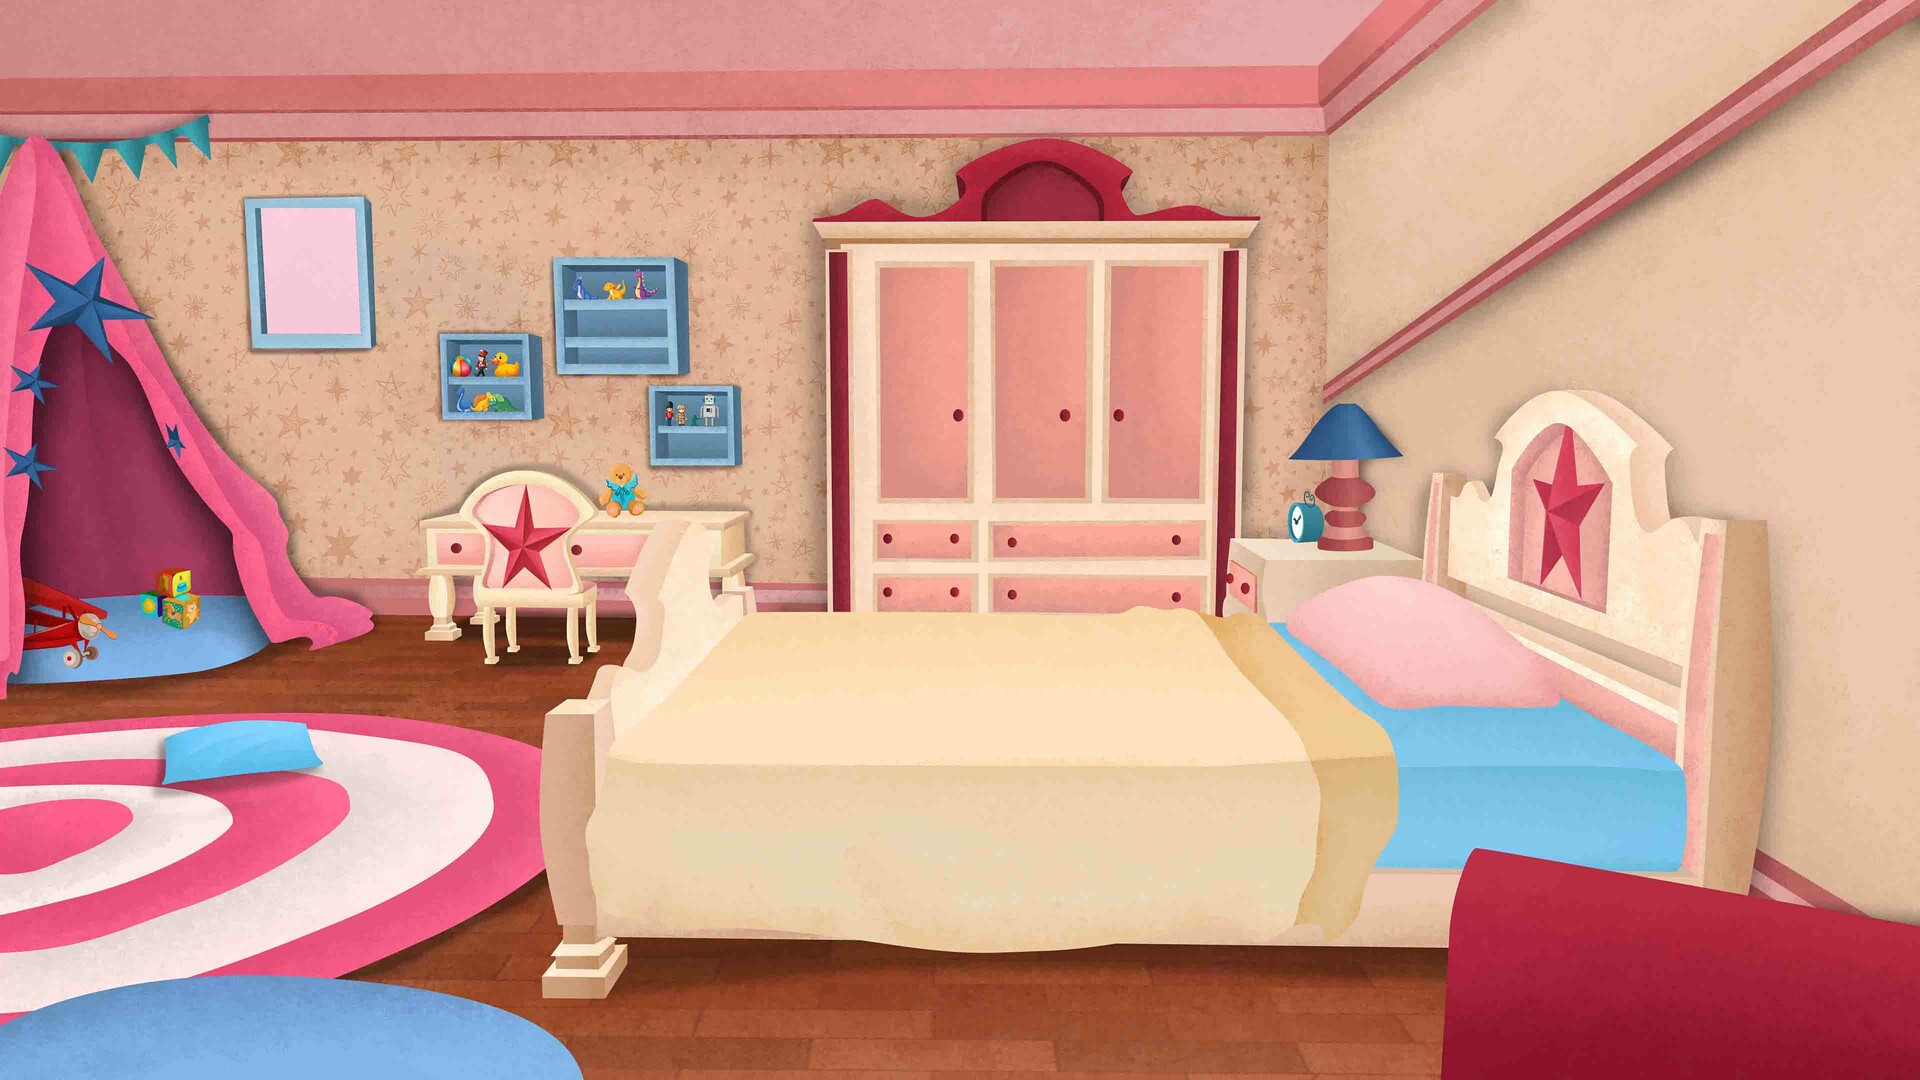 ArtStation - Cartoon Illustration - Kids Bedroom